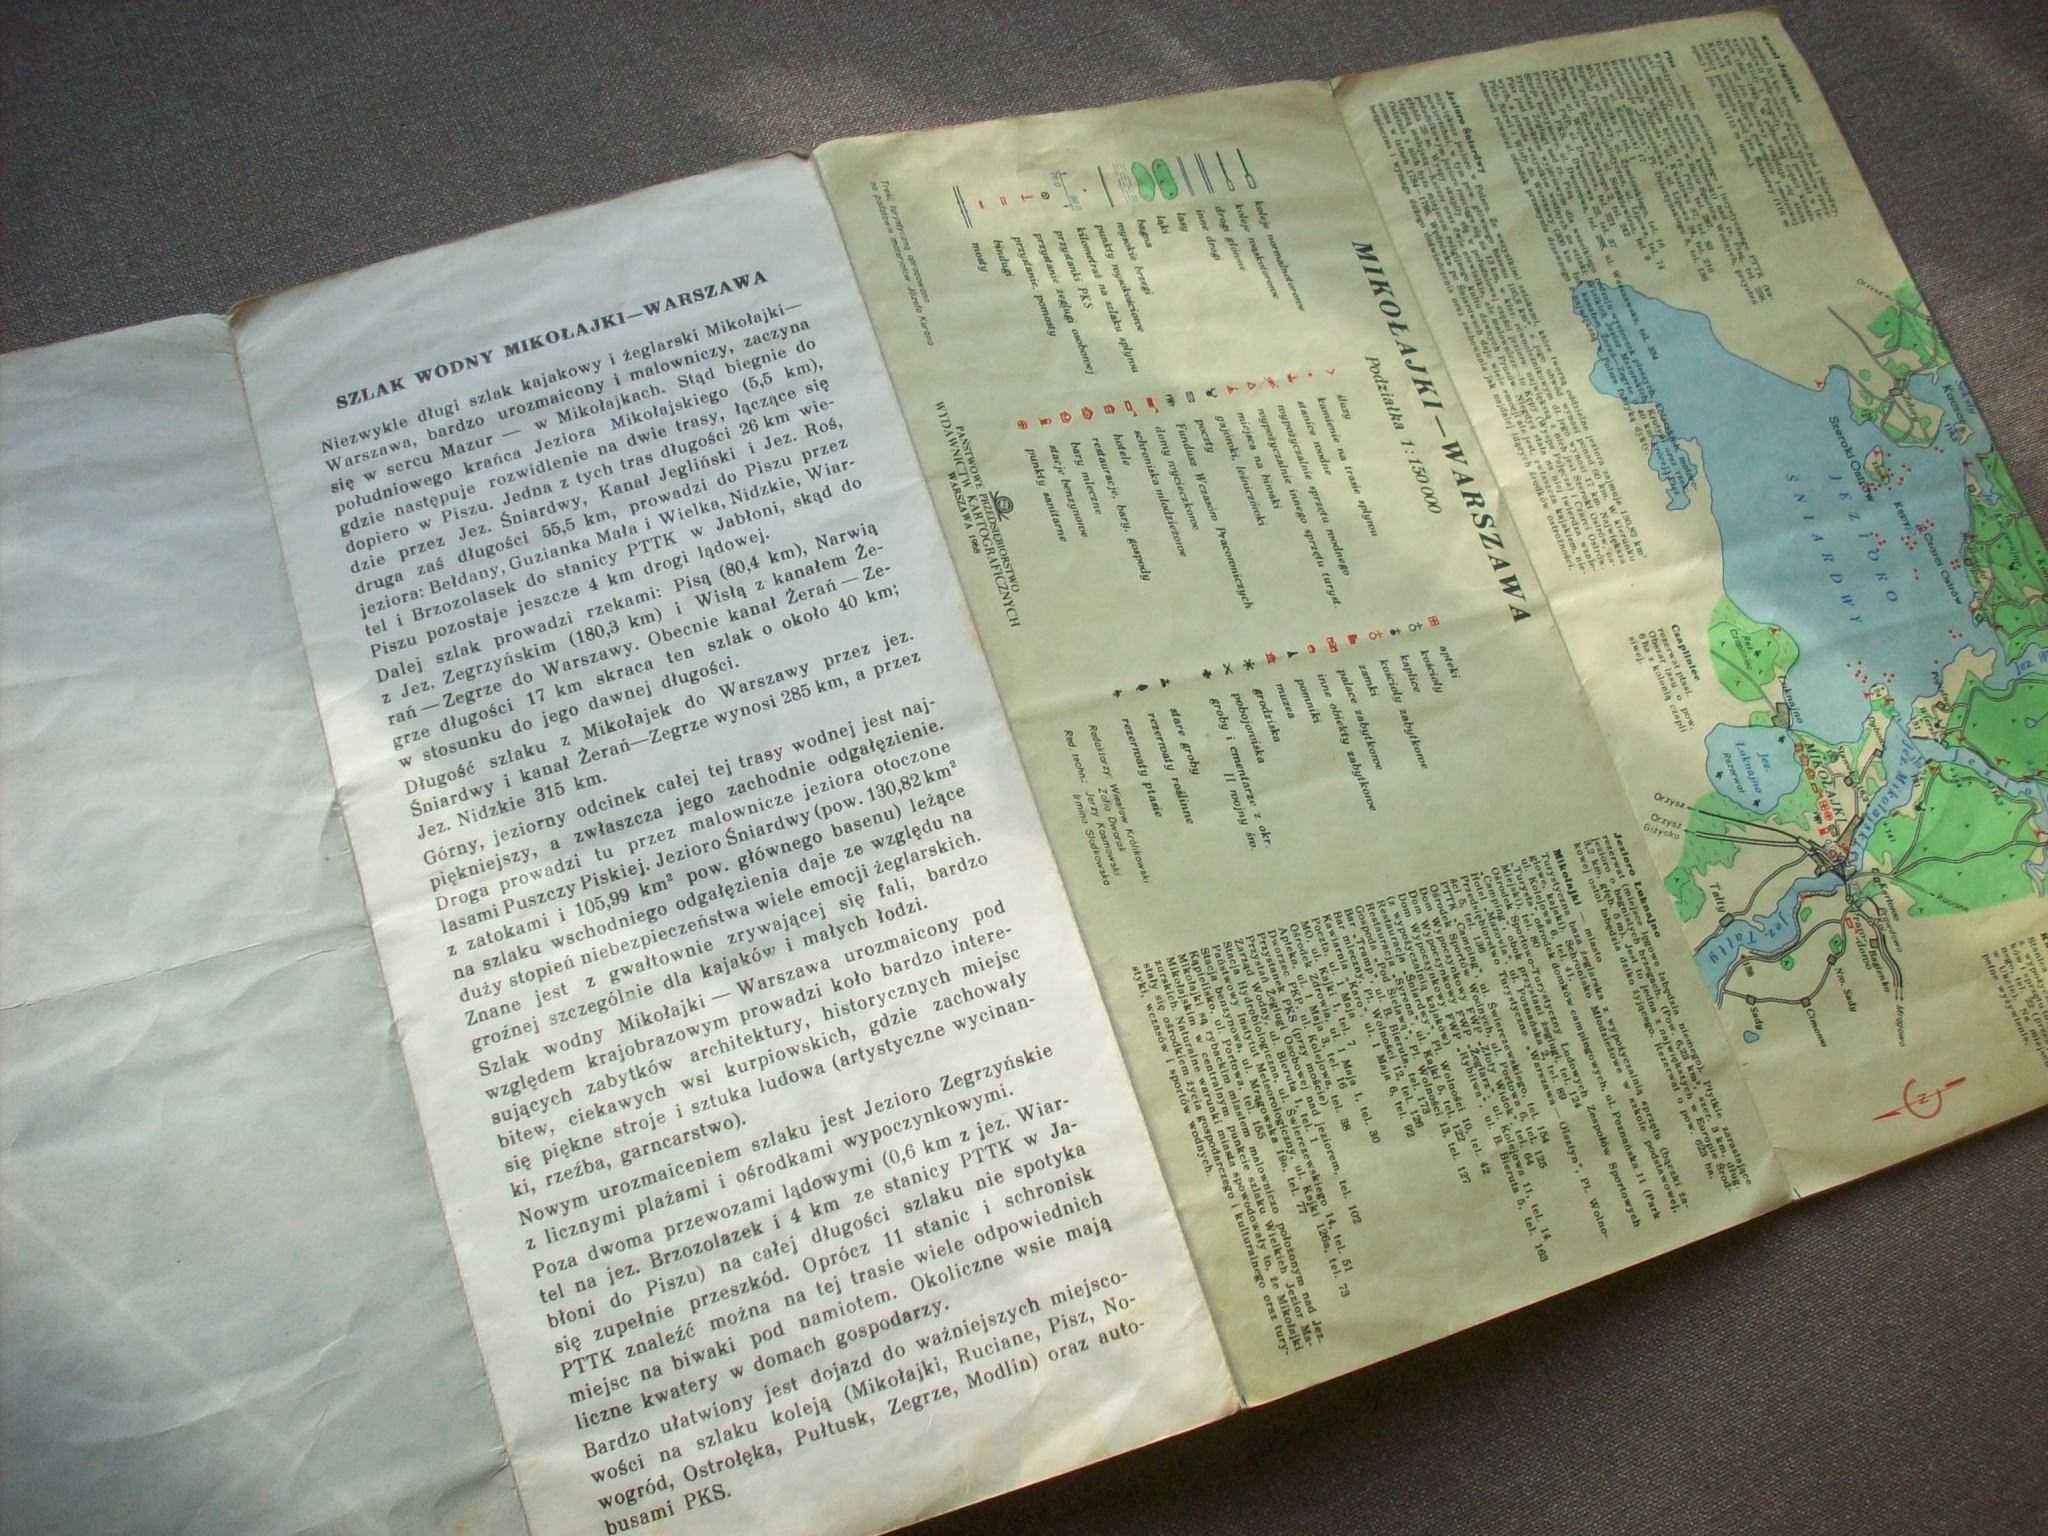 Szlak wodny Mikołajki Warszawa, mapa turystyczna, 1968.